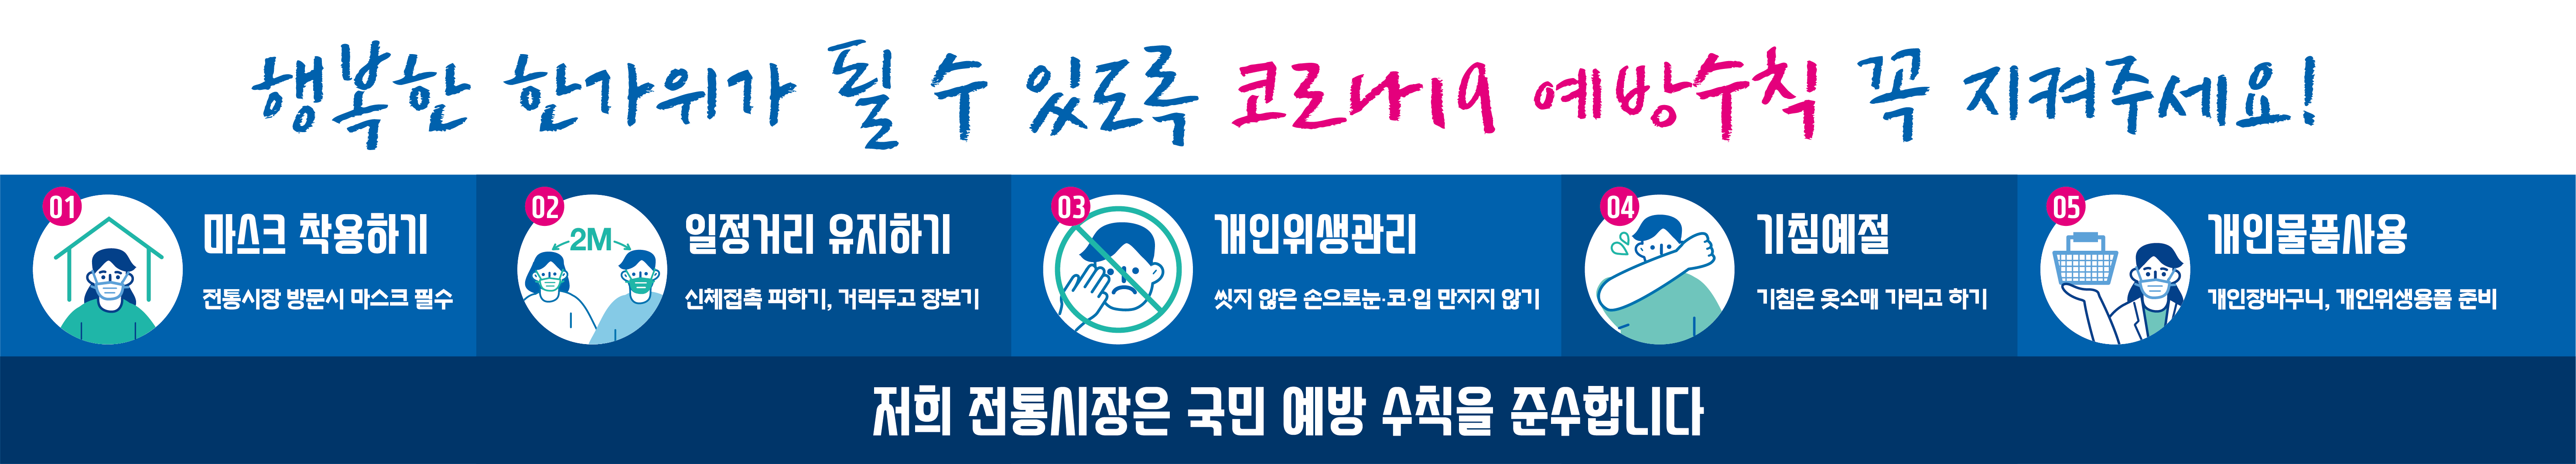 2020년 추석 명절맞이 온누리상품권 특별할인판매 홍보물(현수막) 시안